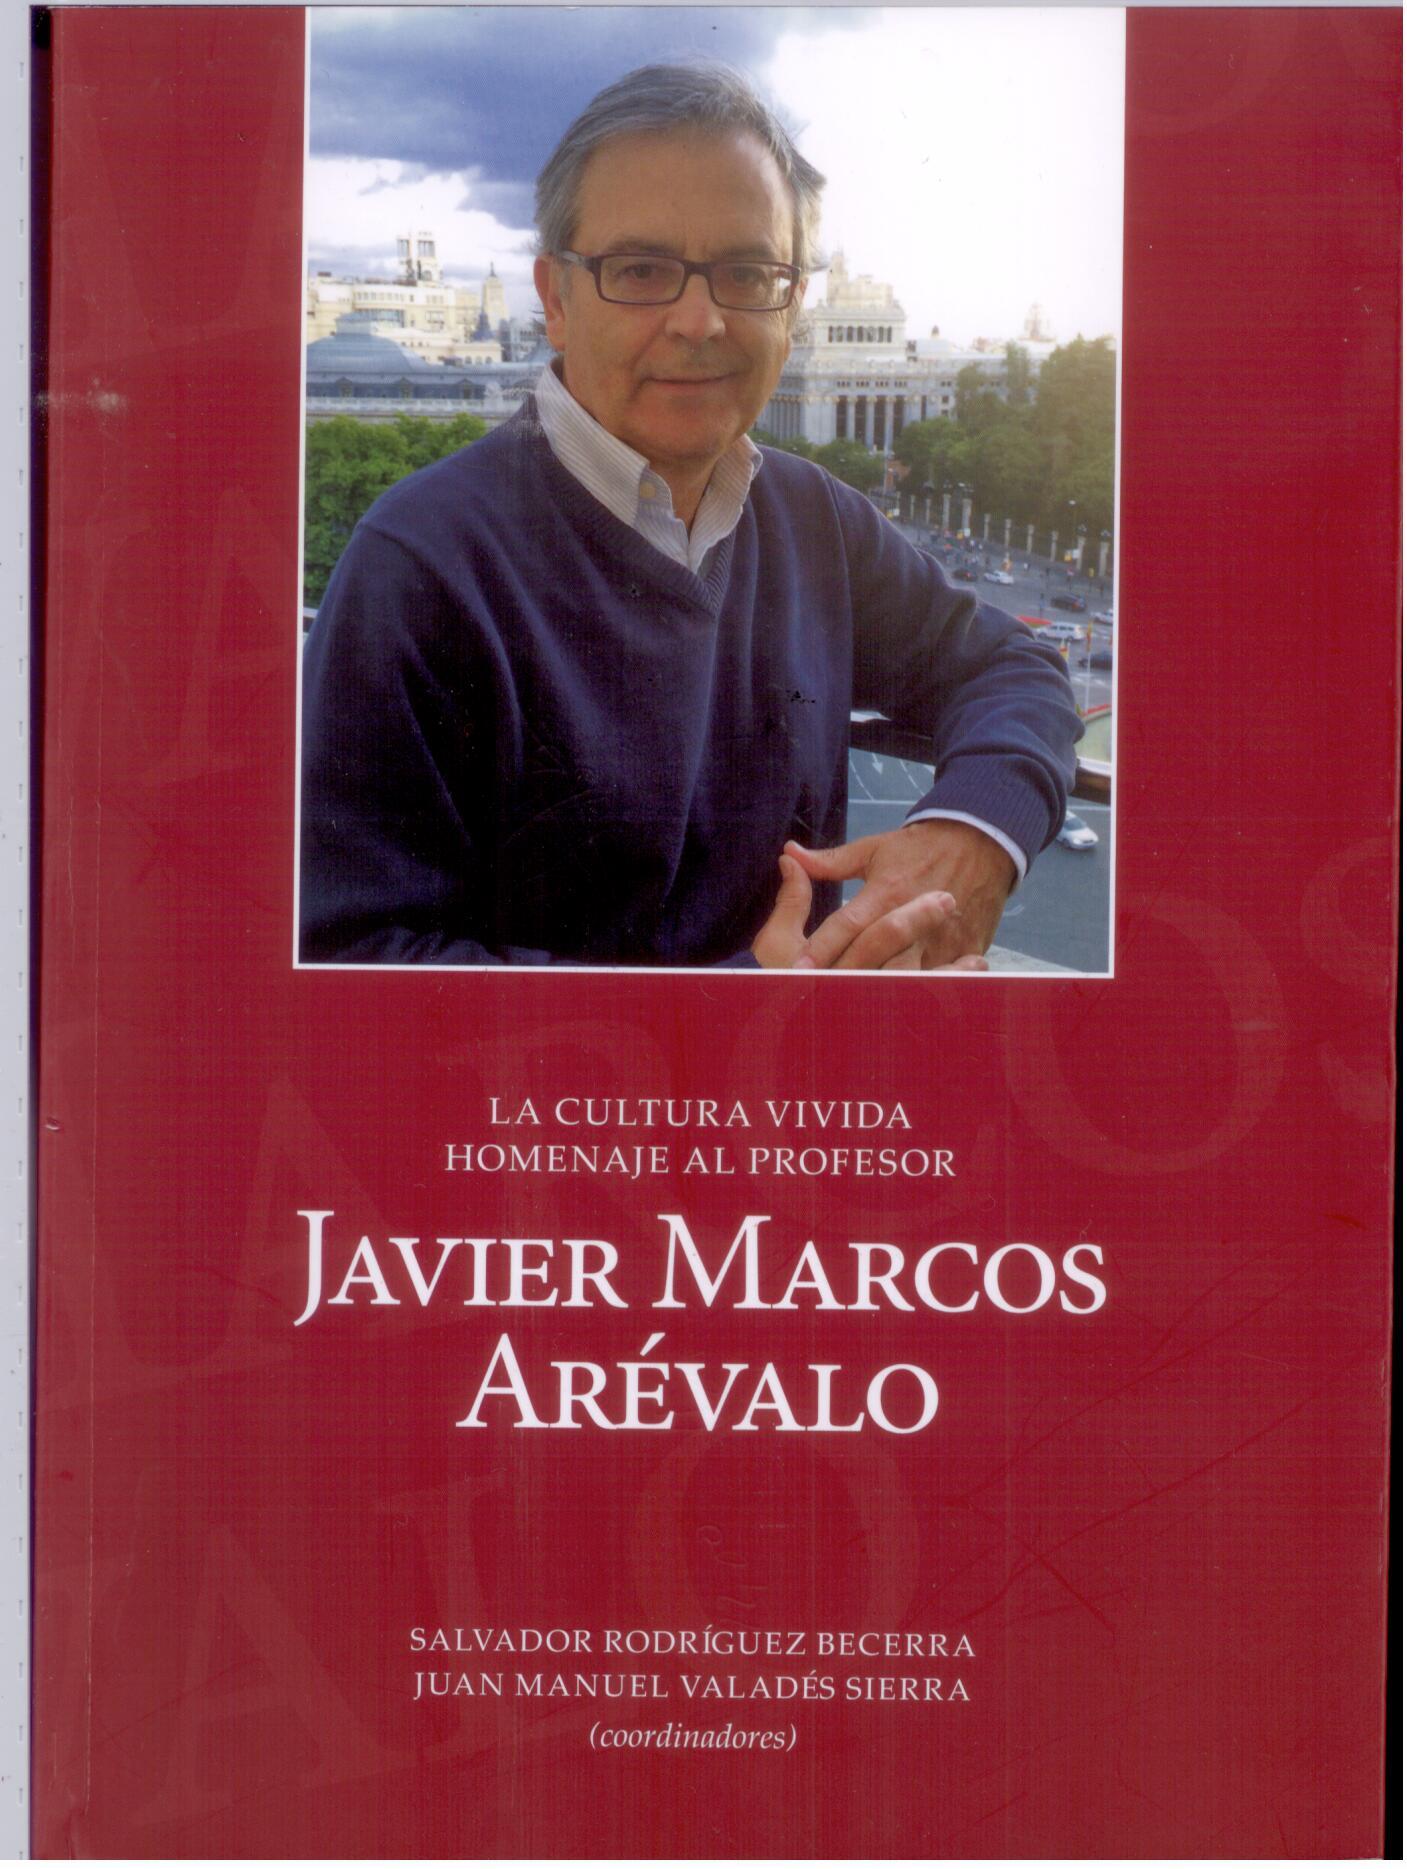 Imagen de portada del libro La cultura vivida. Homenaje al profesor Javier Marcos Arévalo